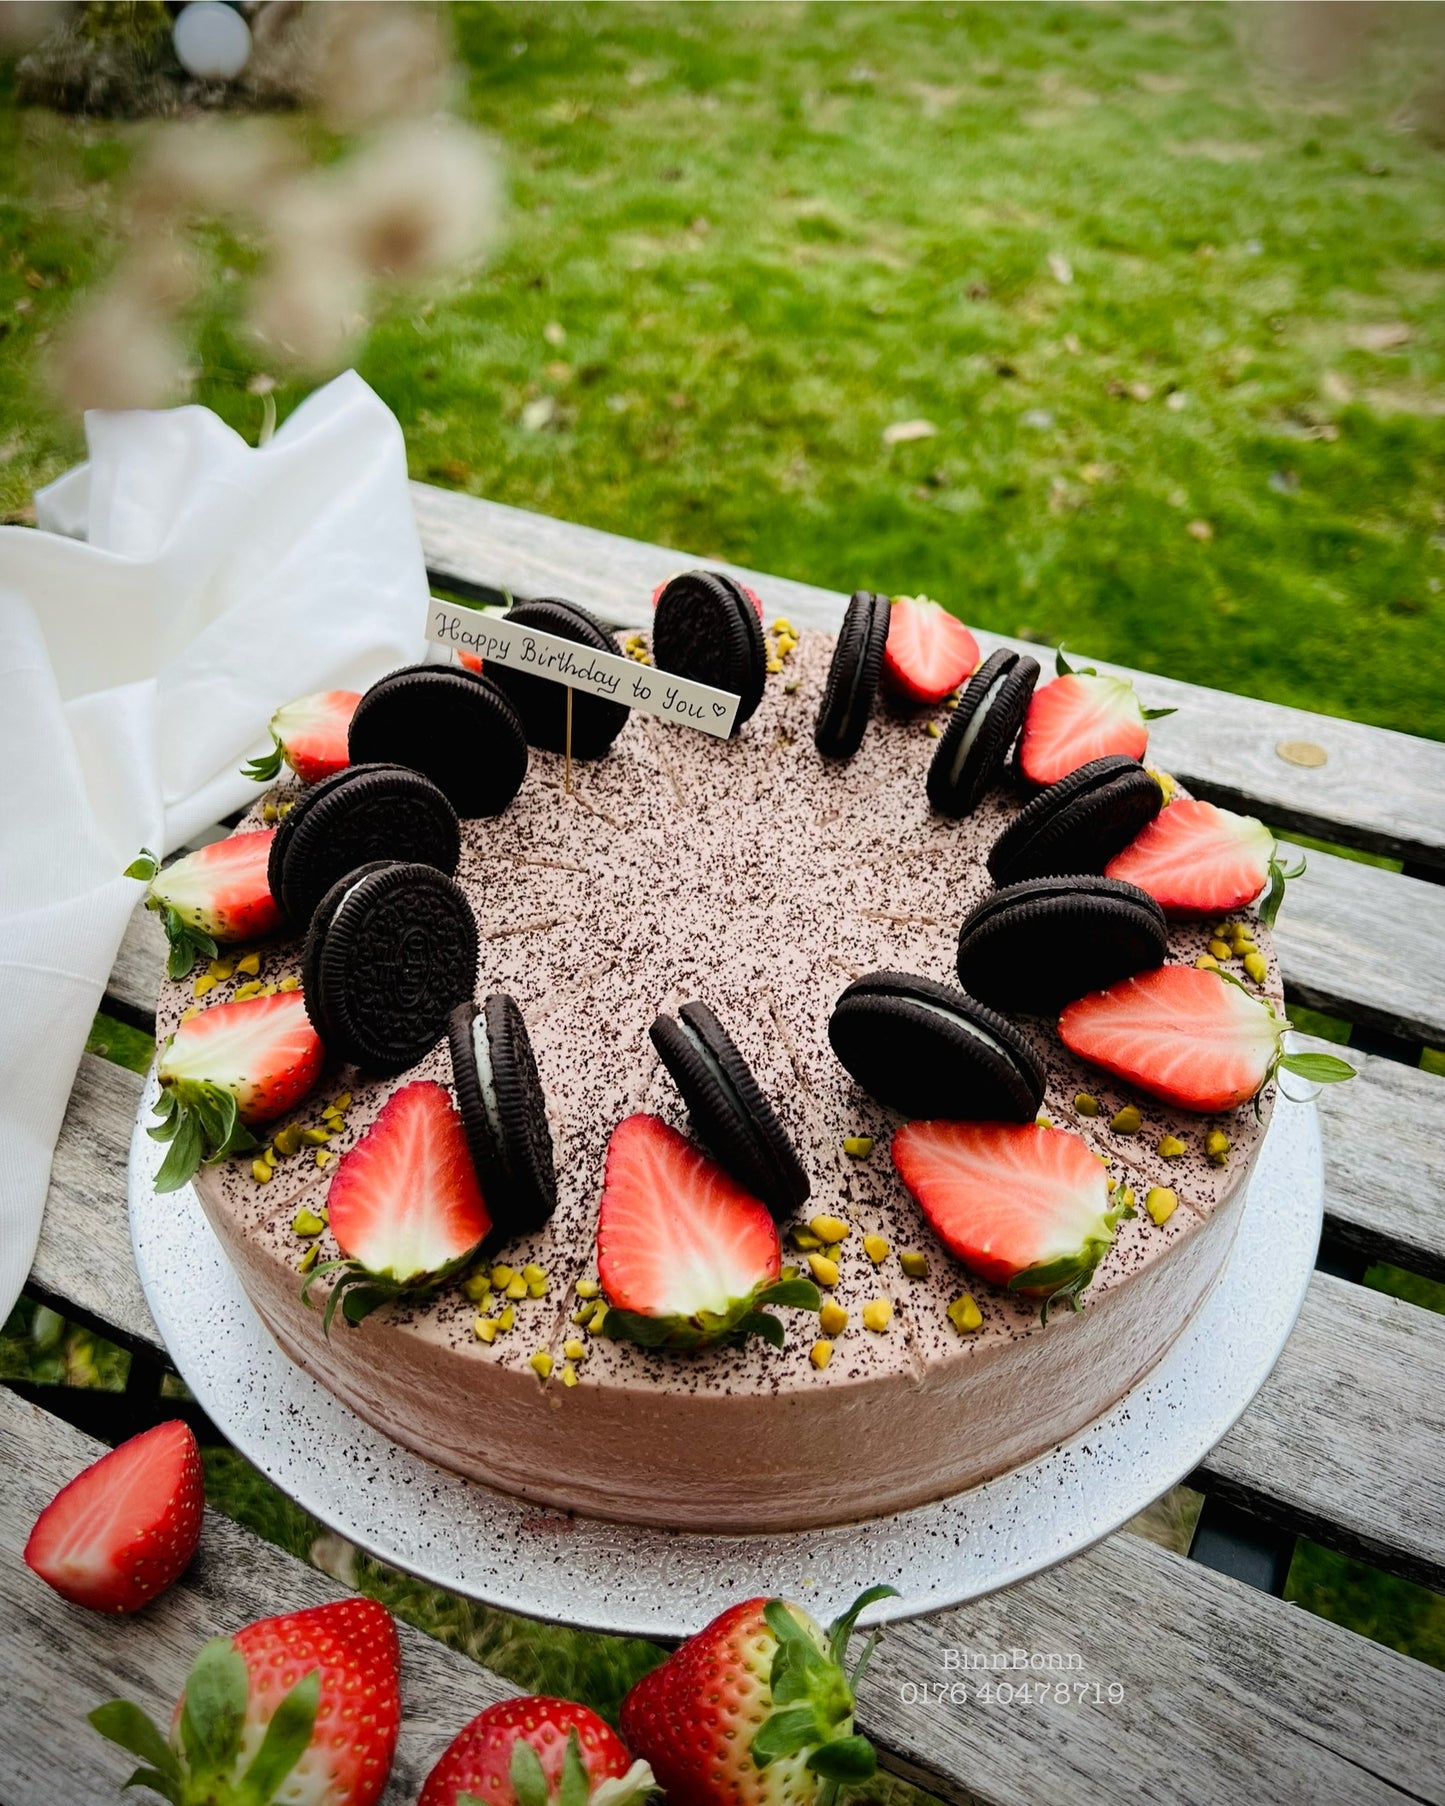 43. Torte "Coffee and Oreo" mit himmlischer Schoko-Mousse und frischen Erdbeeren 26 cm